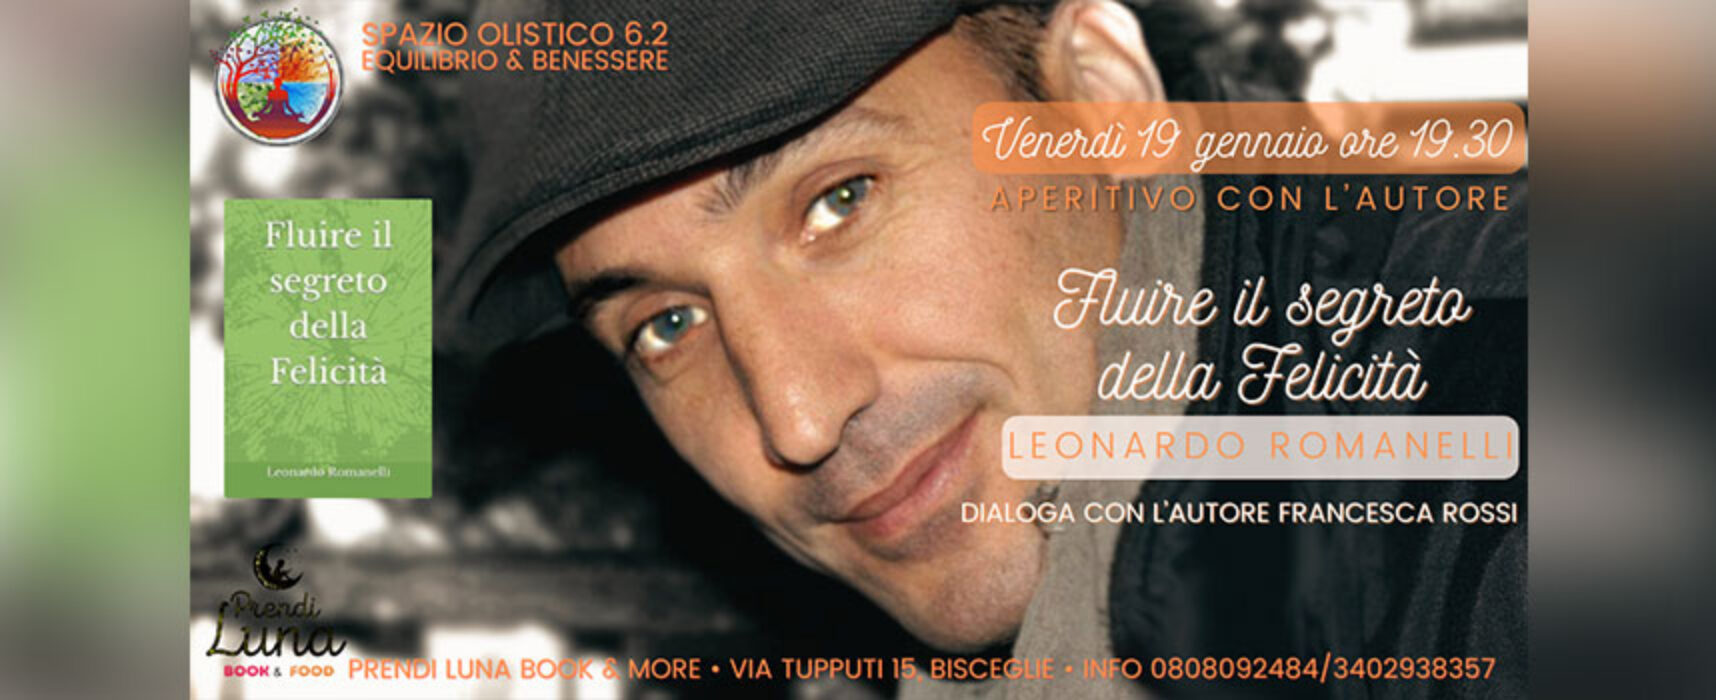 Leonardo Romanelli a Bisceglie presenta il suo compendio “Fluire il segreto della felicità”